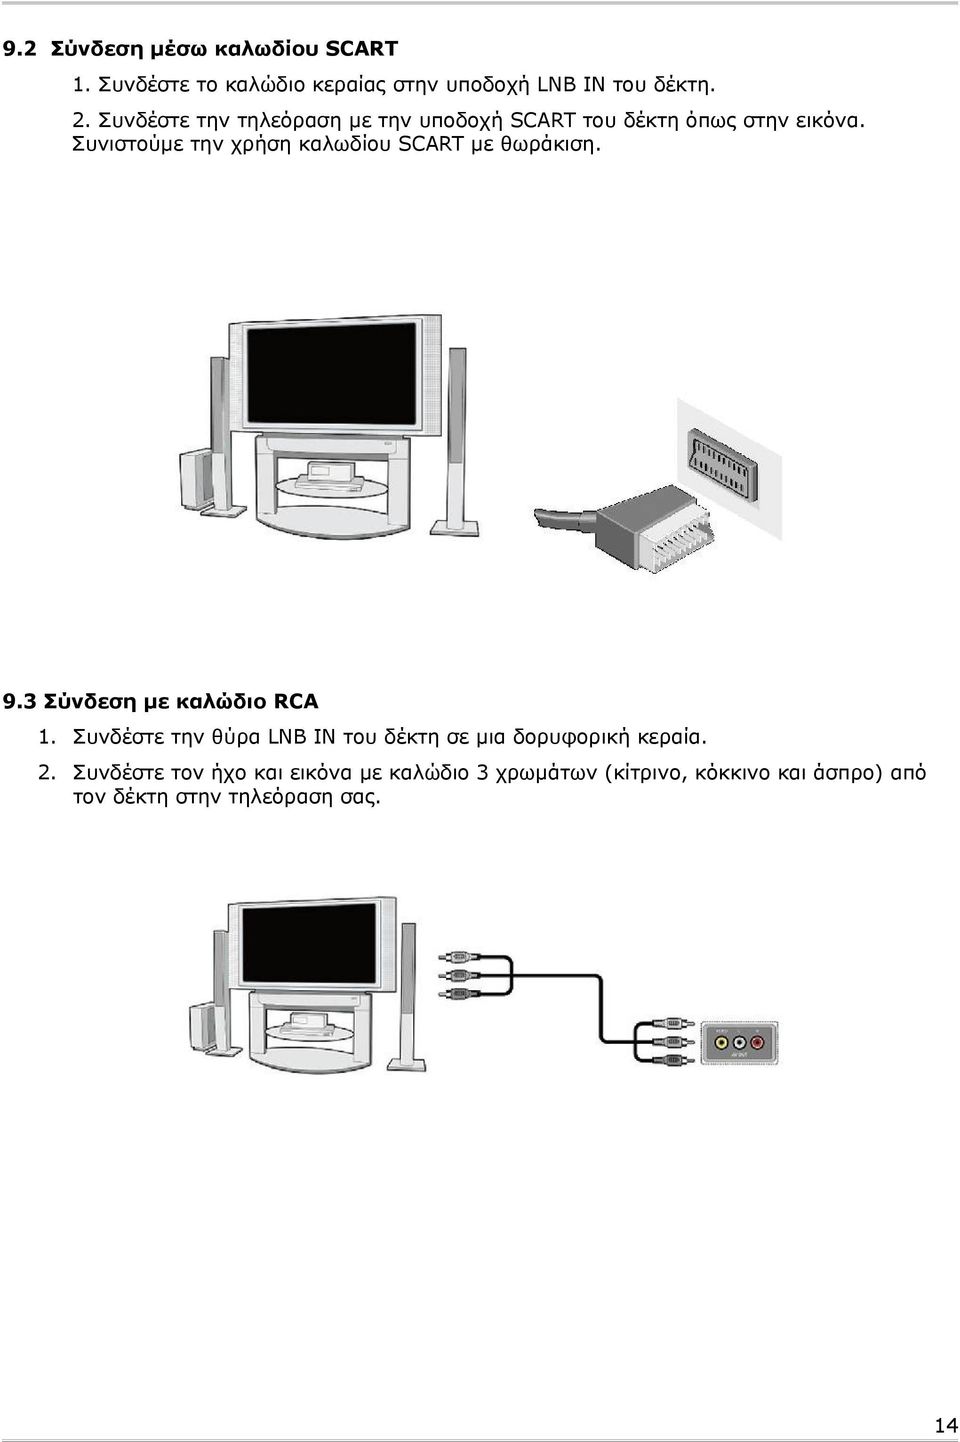 Συνιστούμε την χρήση καλωδίου SCART με θωράκιση. 9.3 Σύνδεση με καλώδιο RCA 1.